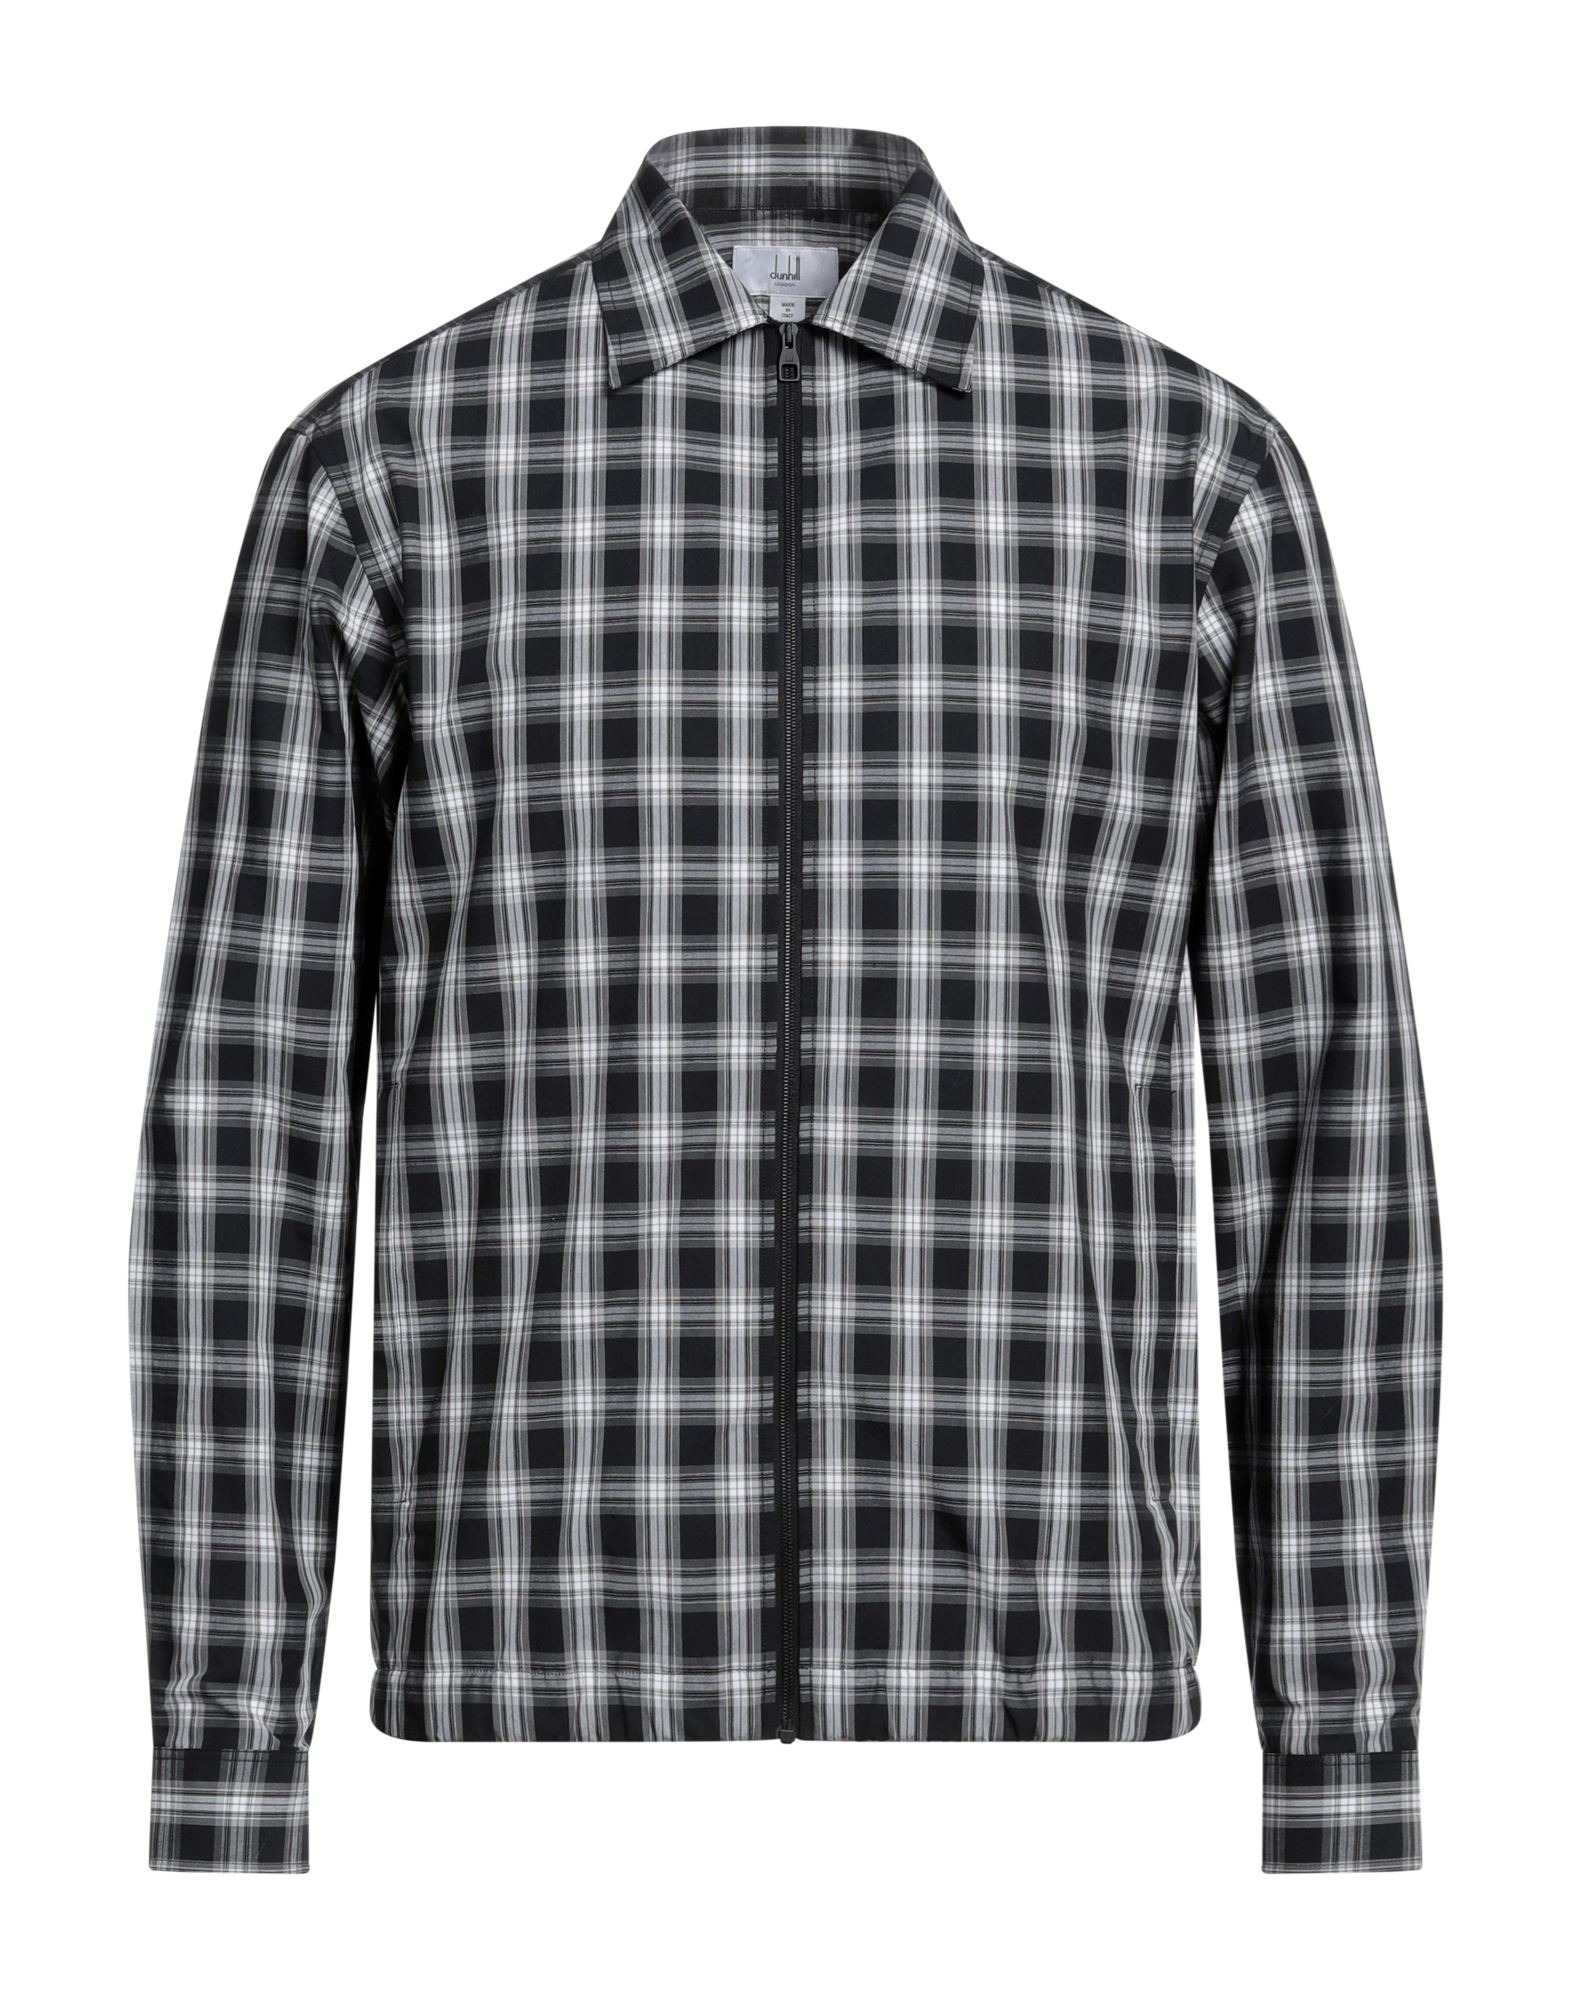 ダンヒル(dunhill) メンズシャツ・ワイシャツ | 通販・人気ランキング ...